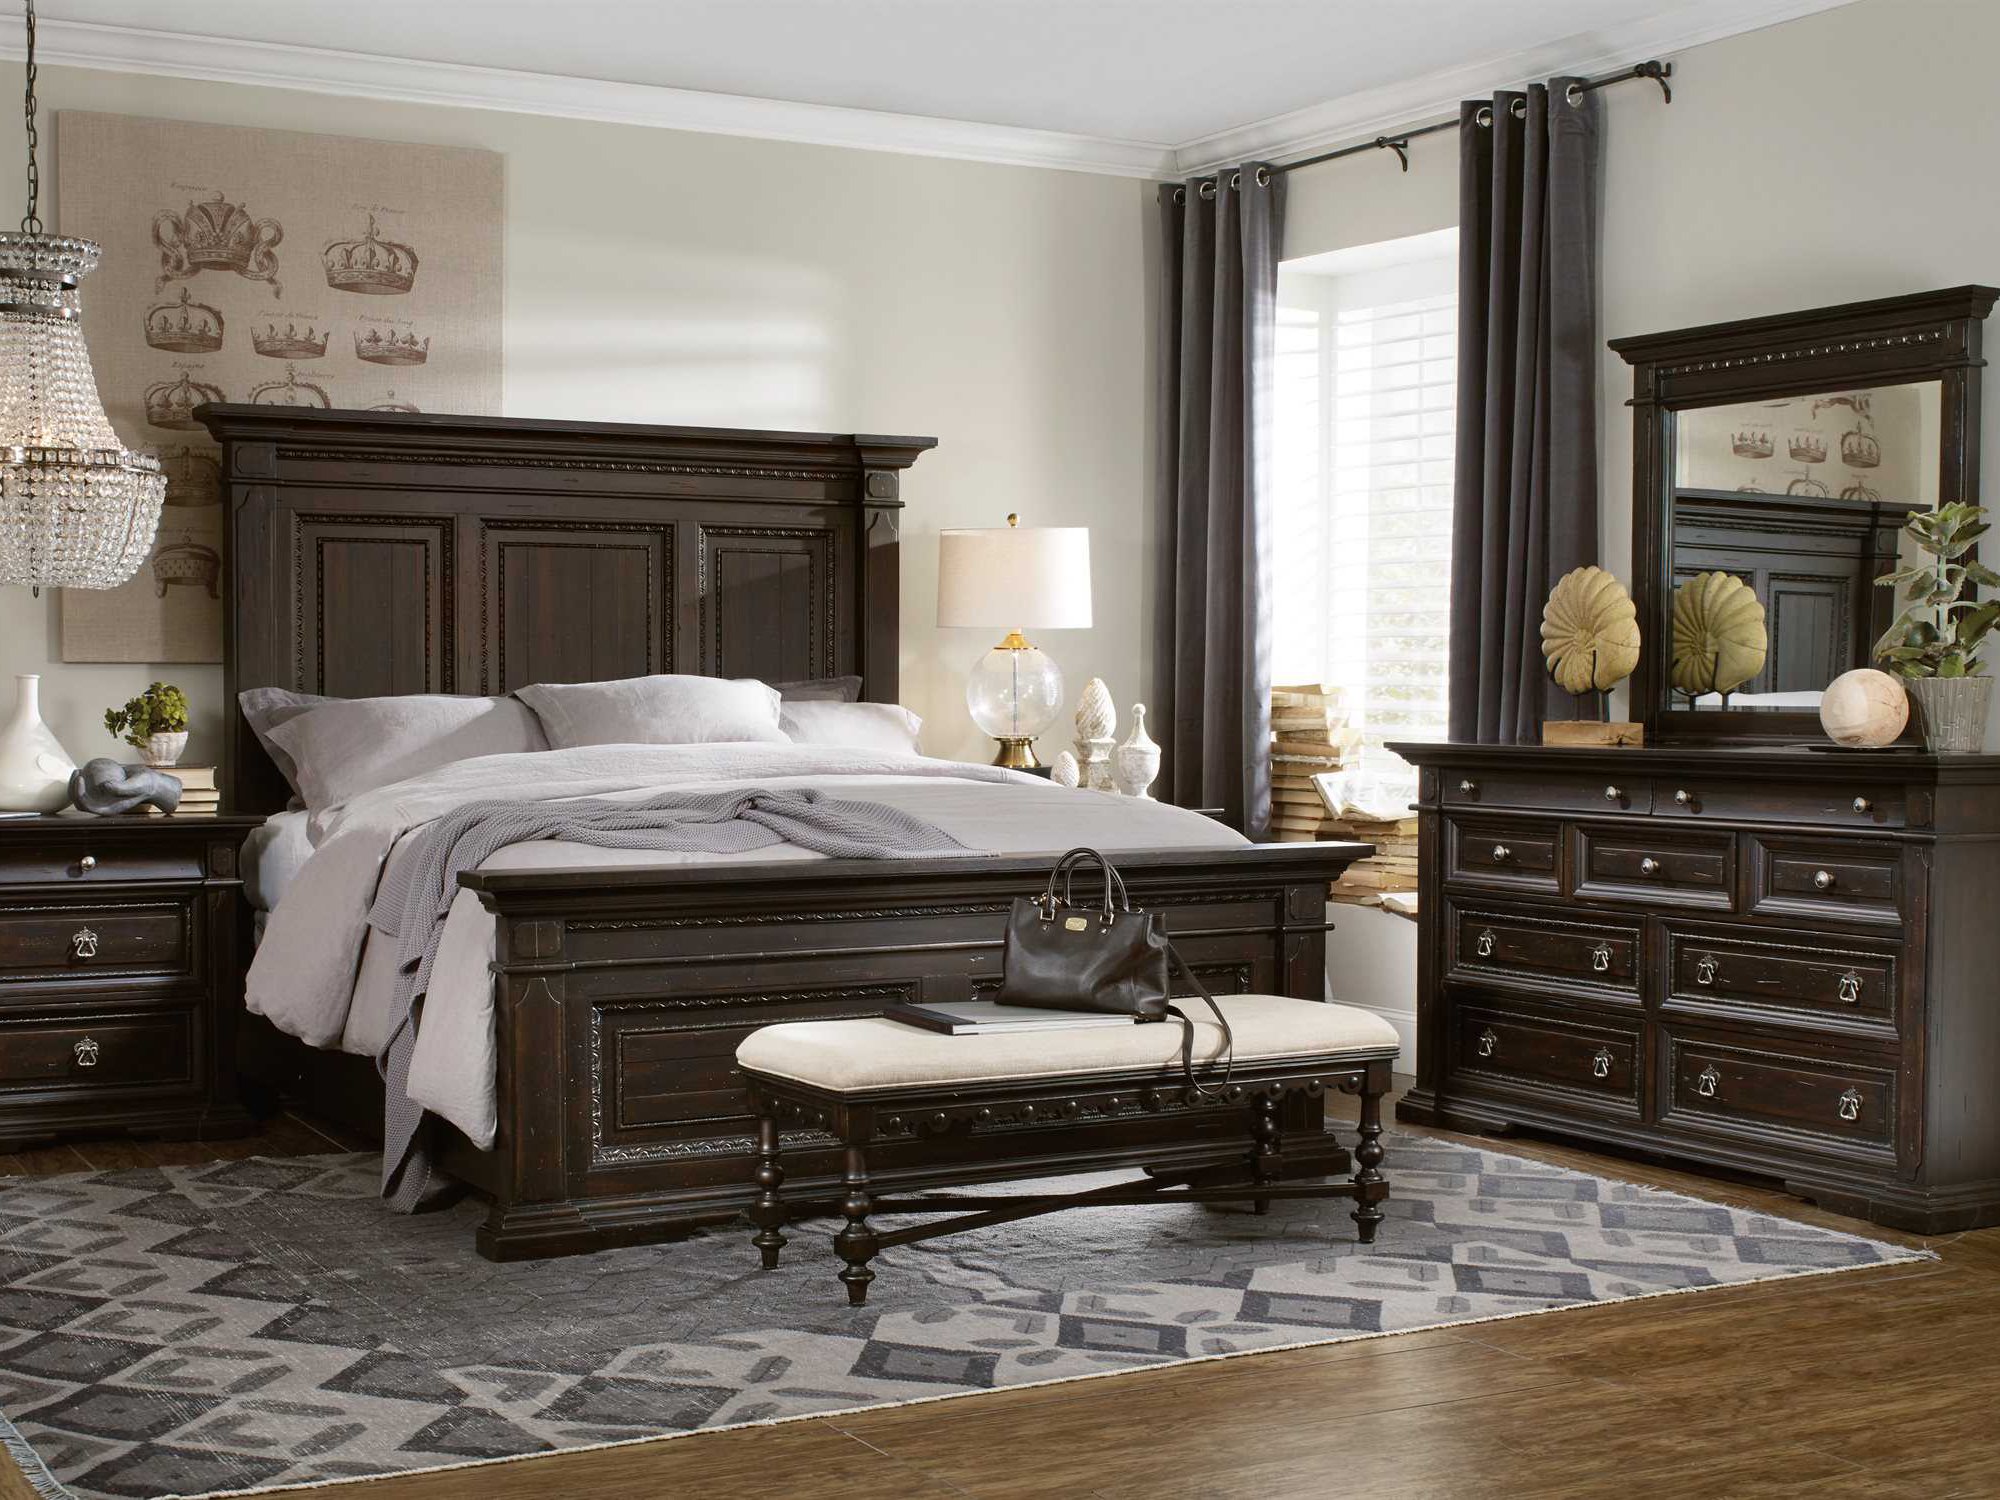 Hooker Furniture Treviso Wood Panel Bed Bedroom Set Hoo537490250set2